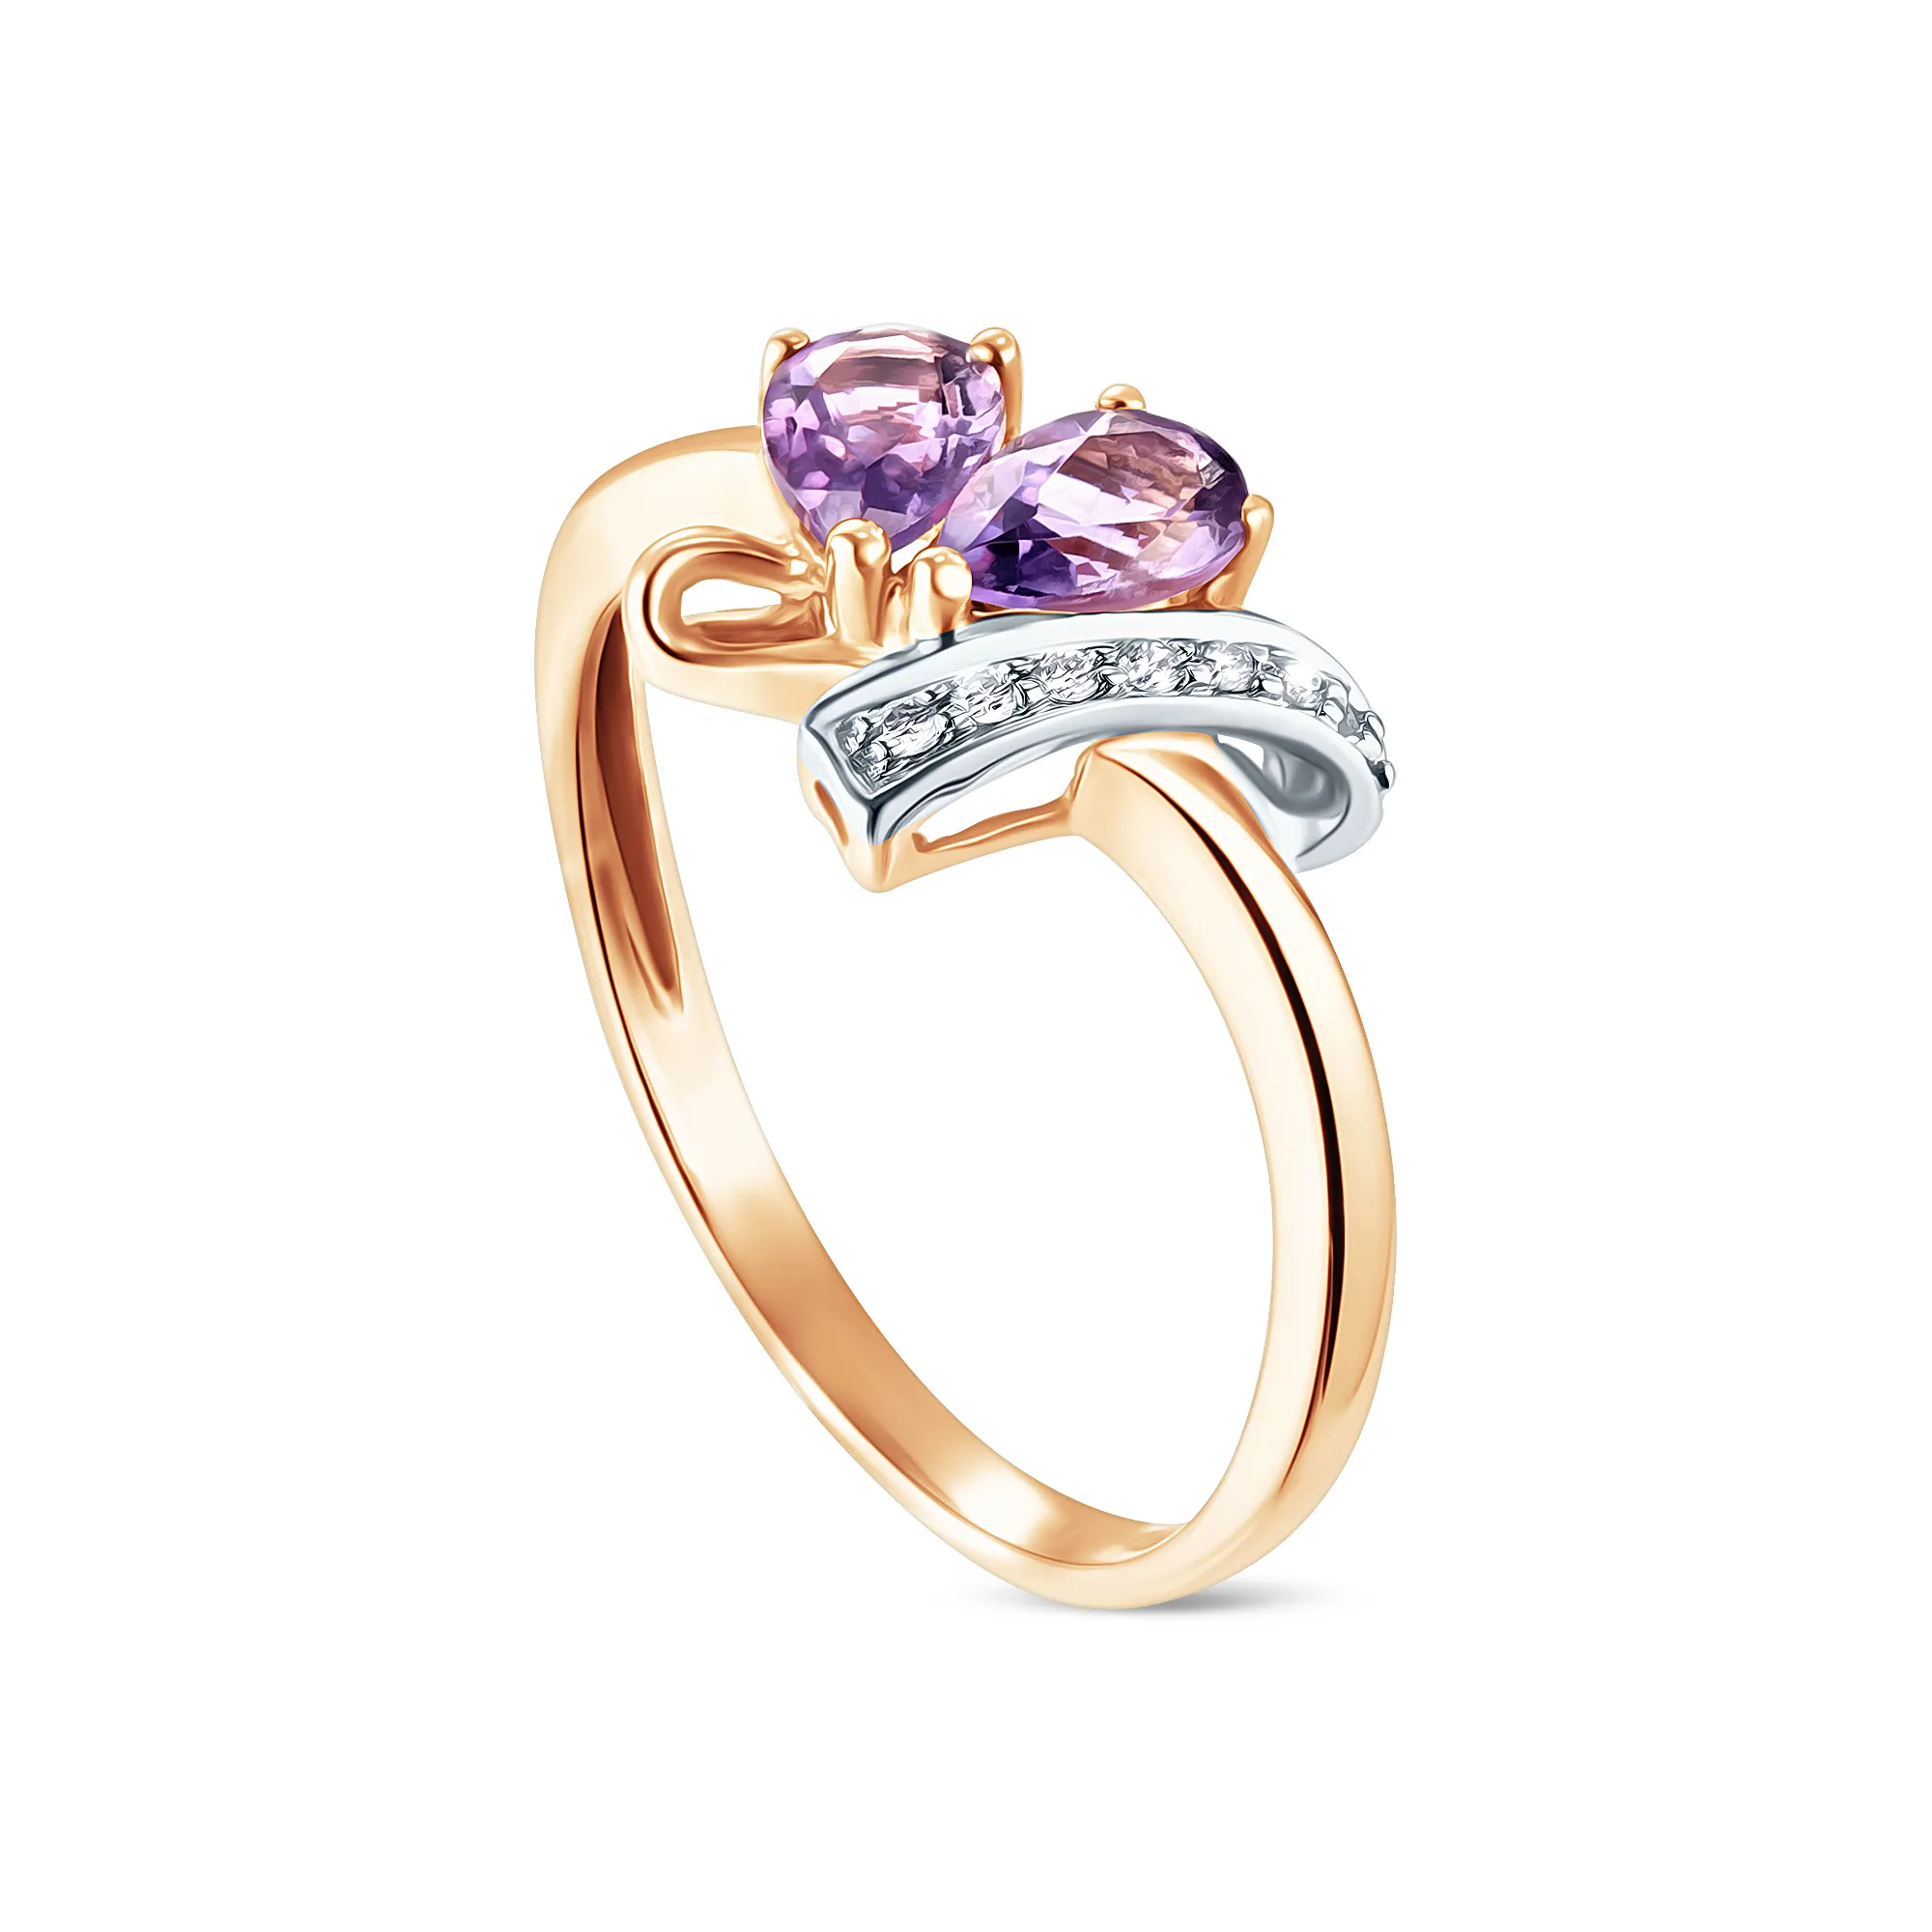 Женское кольцо из золота с аметистом и бриллиантом